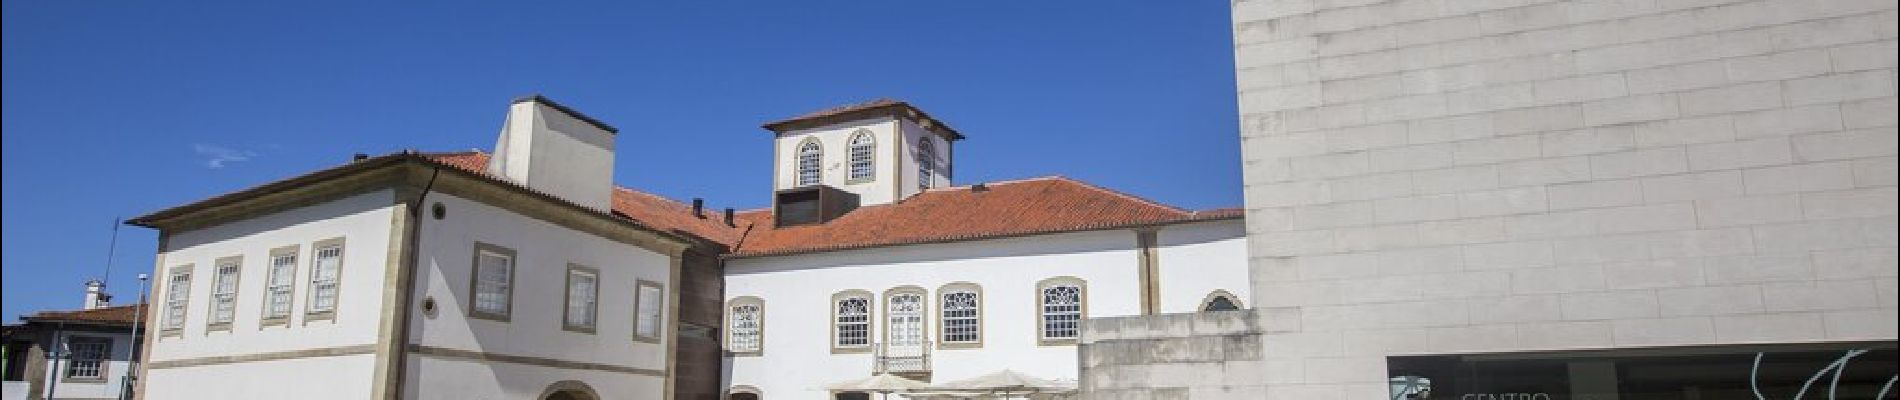 POI Vila do Conde - Centro da memoria - museu de Vi - Photo